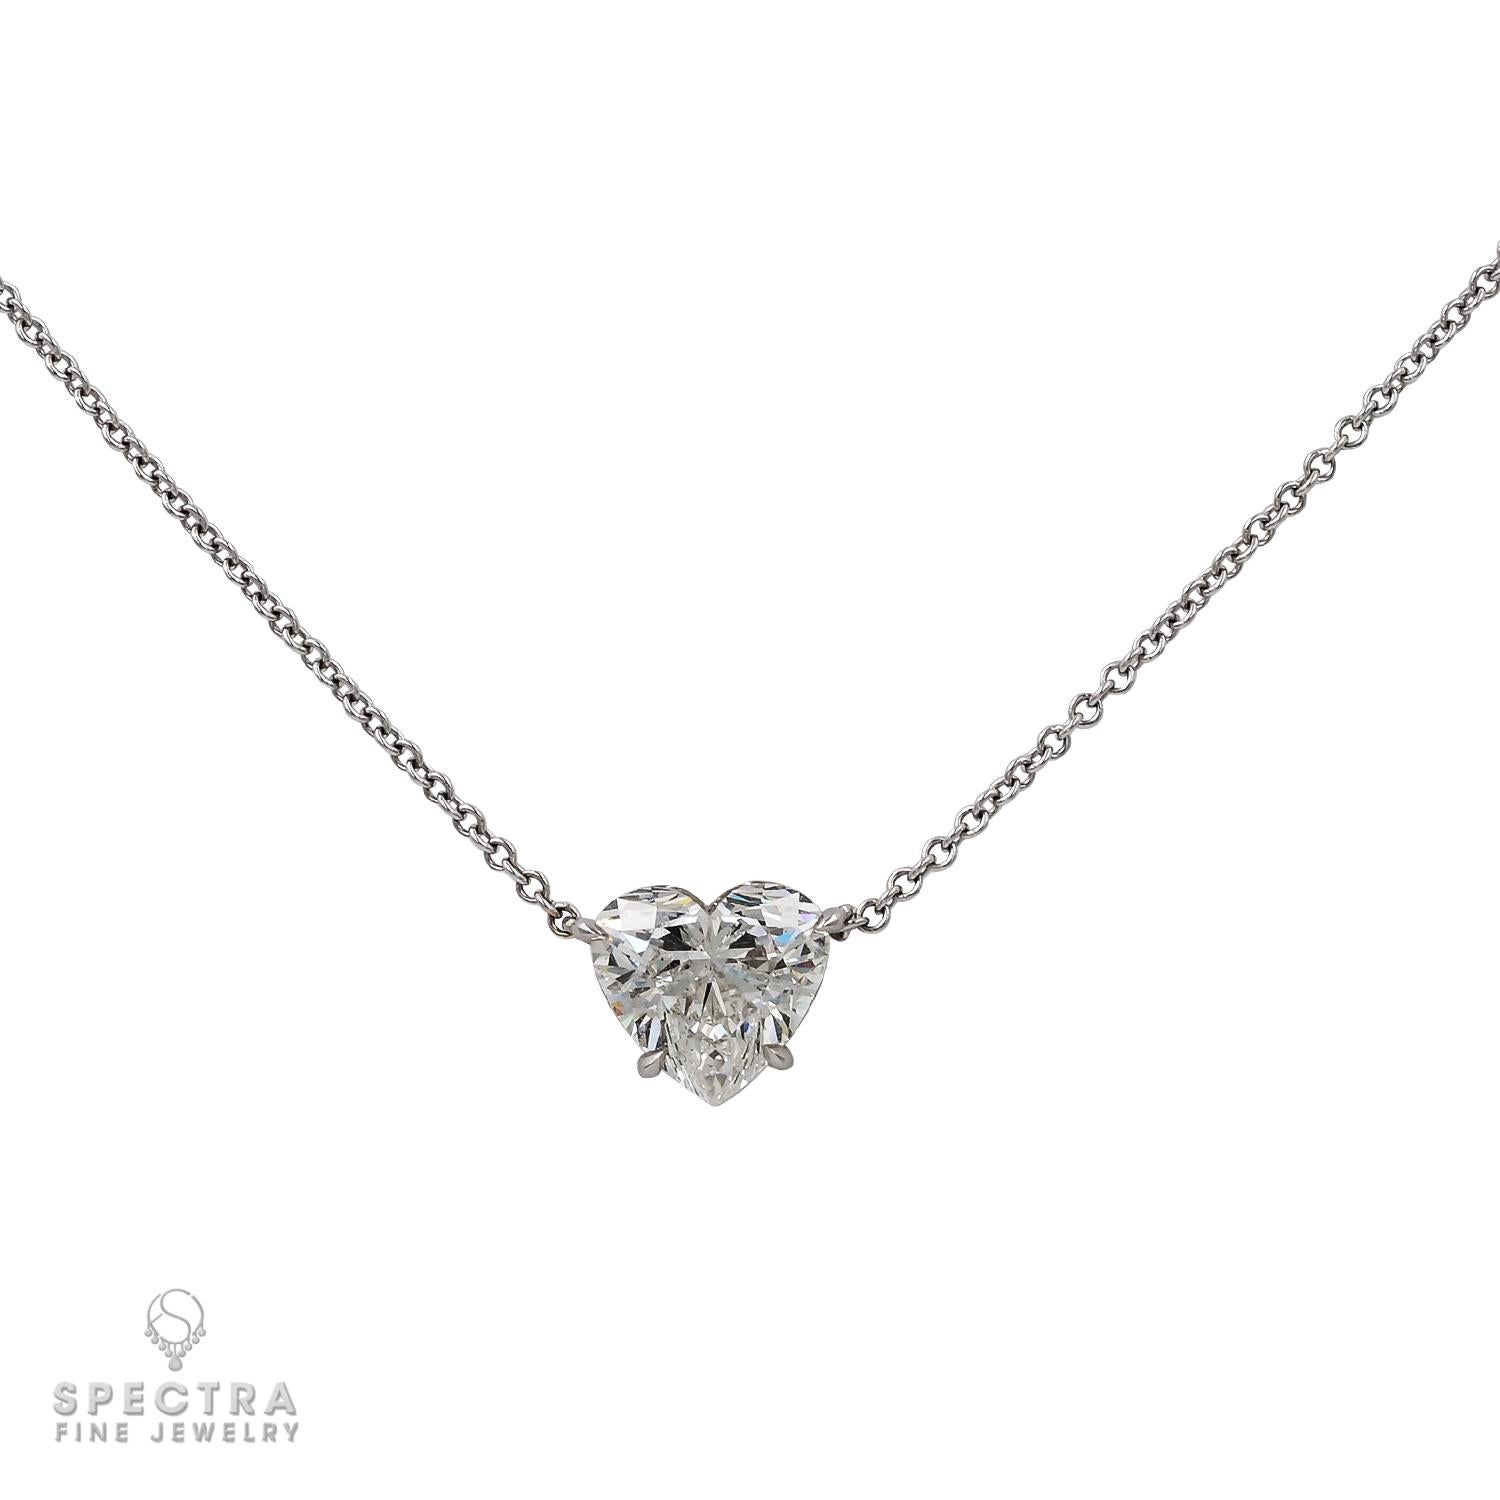 Voici le collier de diamants Spectra Fine Jewelry de 2,11ct HS I SI2, un chef-d'œuvre à couper le souffle qui incarne le summum du luxe et de la beauté. Cet élégant collier met en valeur un diamant en forme de cœur de 2,11 carats, certifié par le